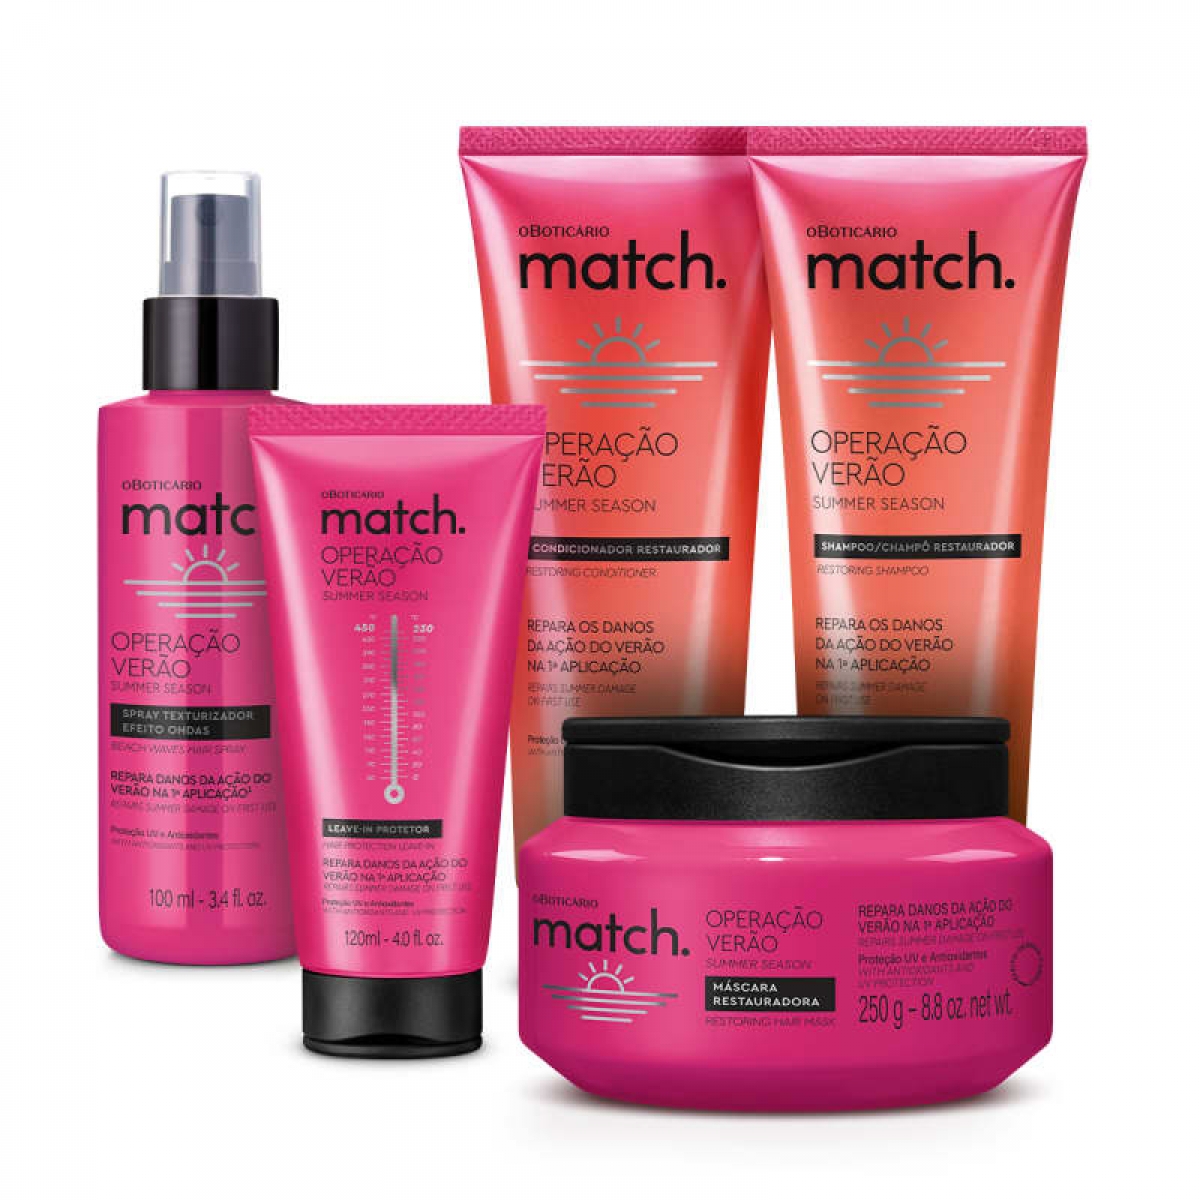 Match, marca especialista em cabelos do Boticário, promove descontos de até 40% em todas as linhas (Imagem: Divulgação/ O Boticário)